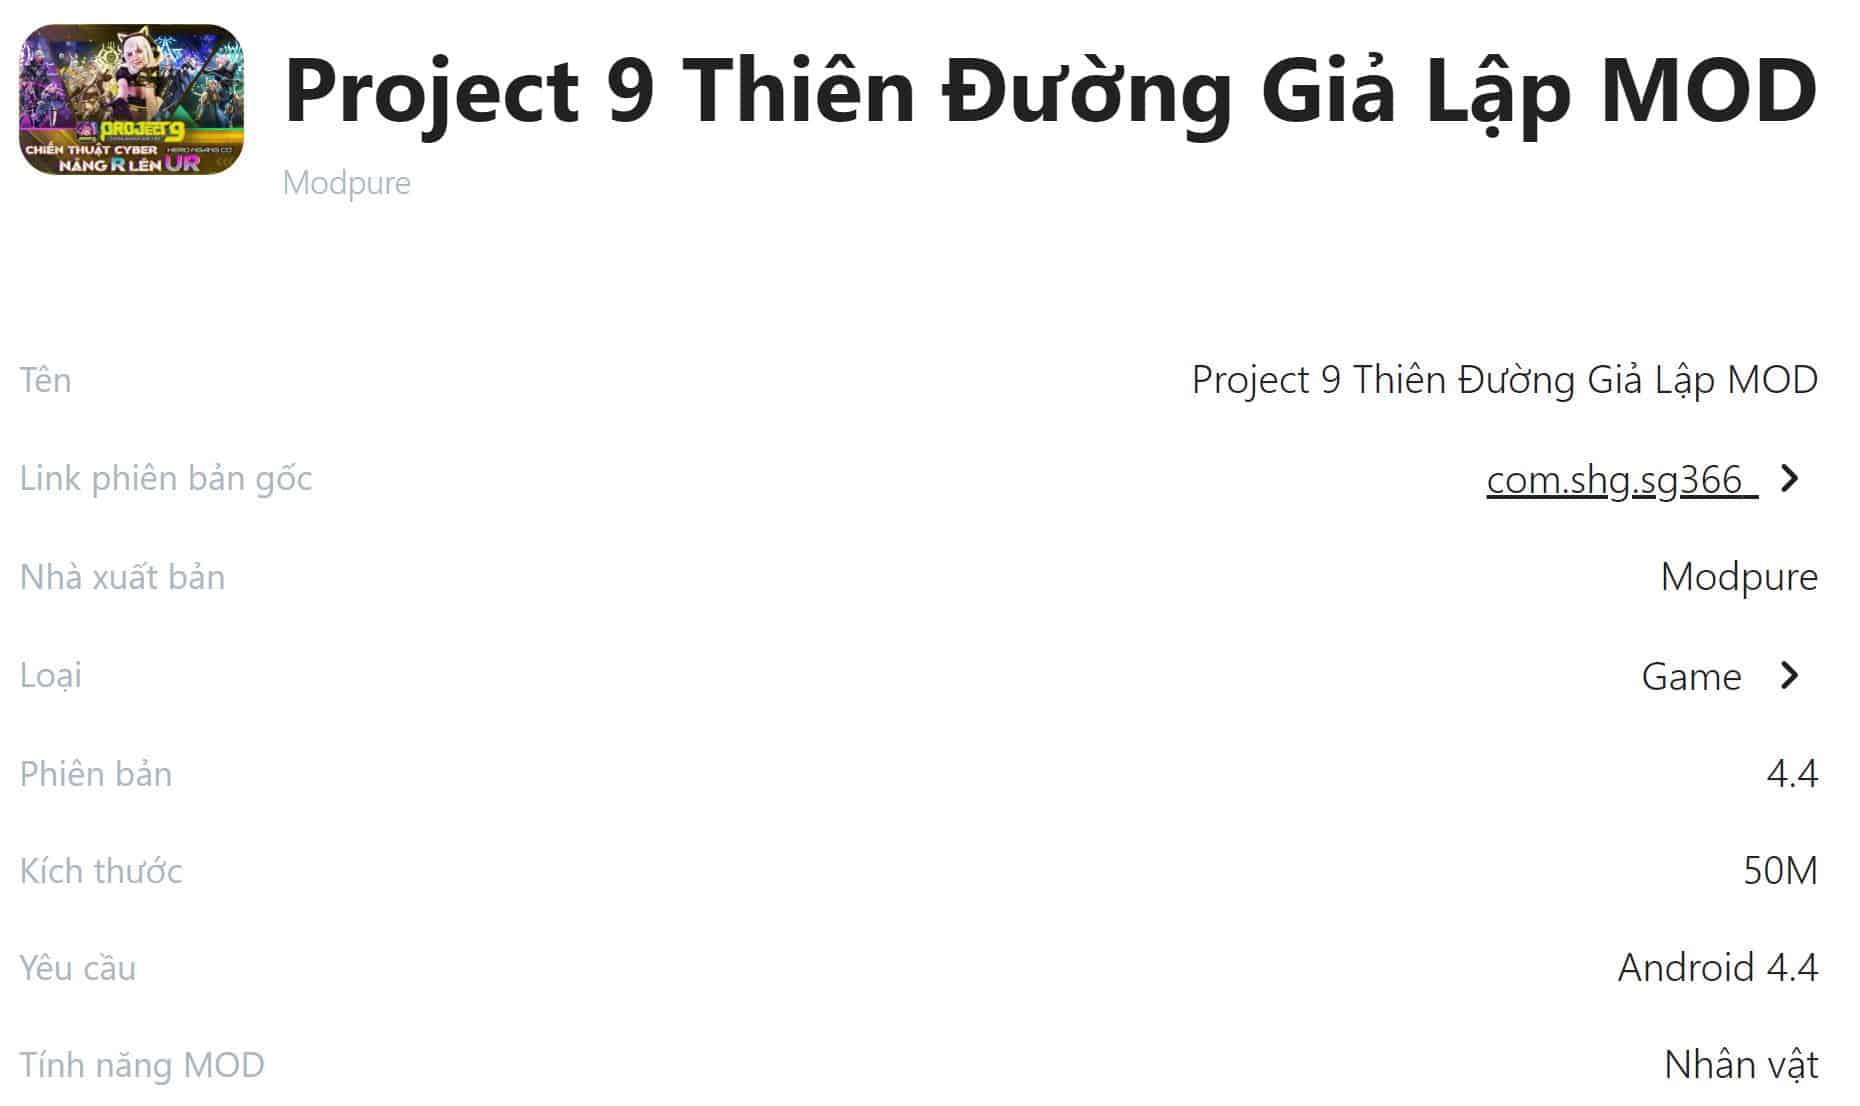 Project 9 Thiên Đường Giả Lập MOD